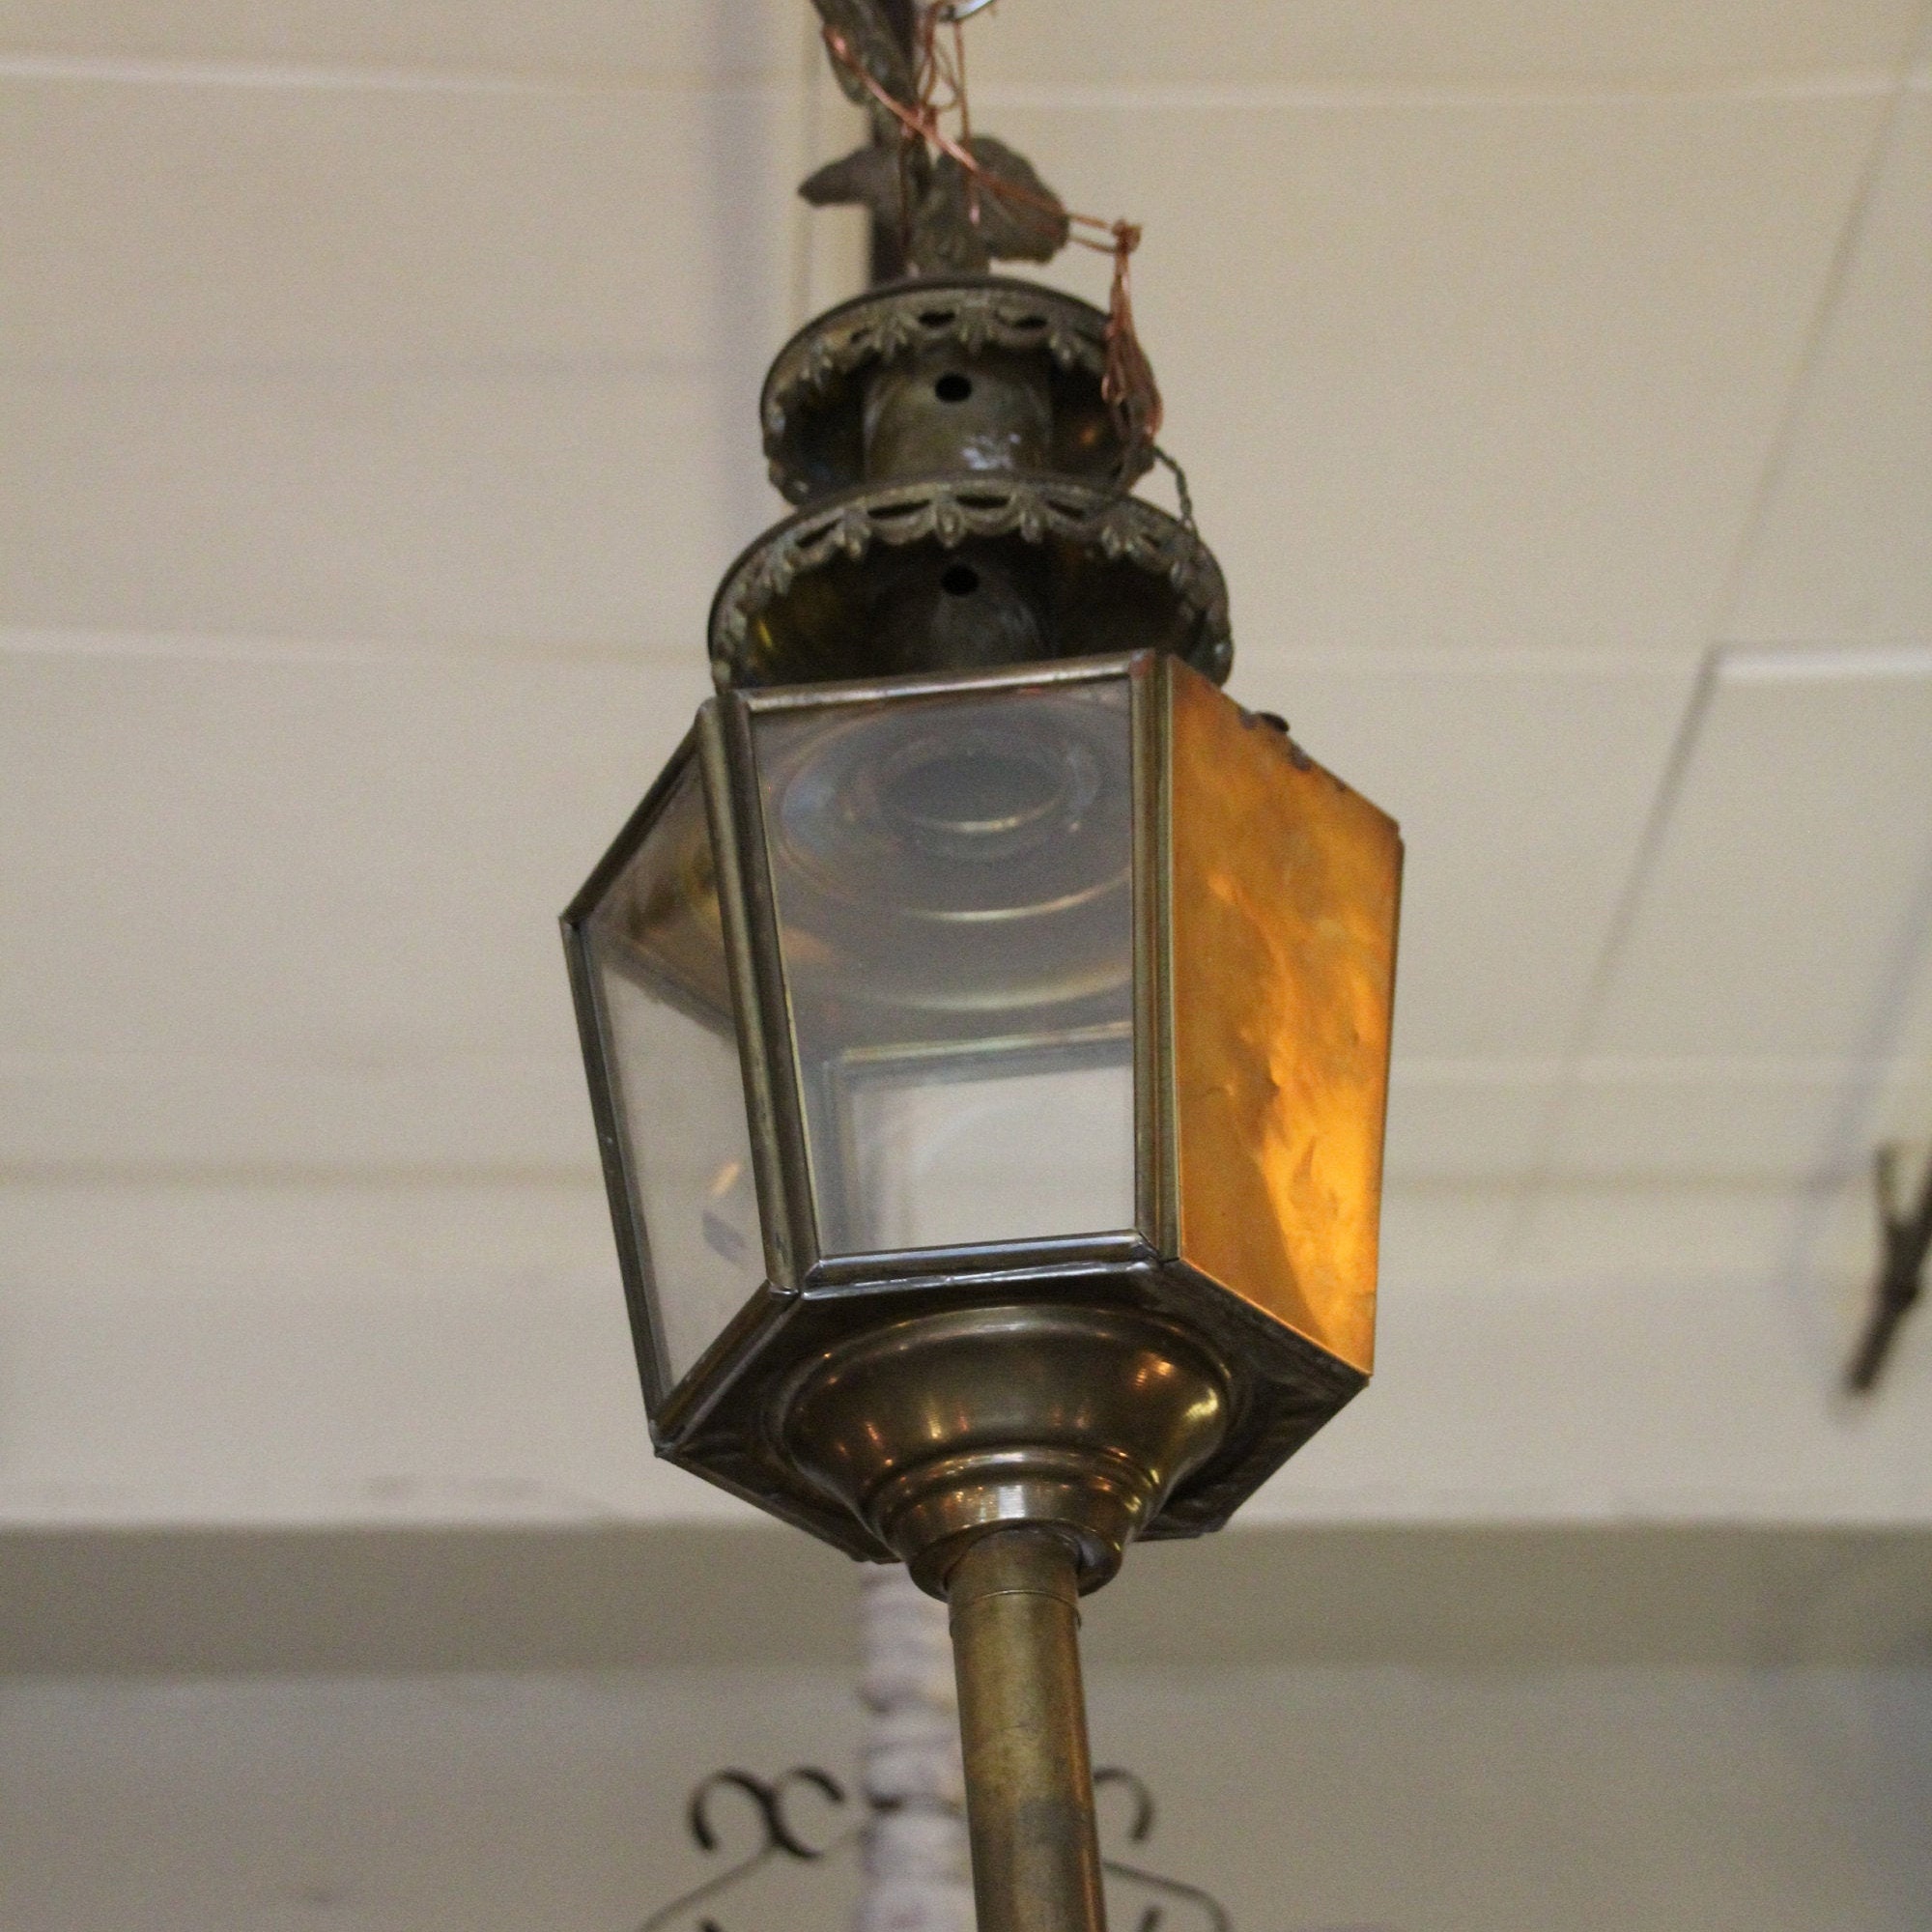 Français Chariot Antique Lanterne Vintage Lanterne Éclairage Lampe Lumineuse Hanging Coach Buggy Car